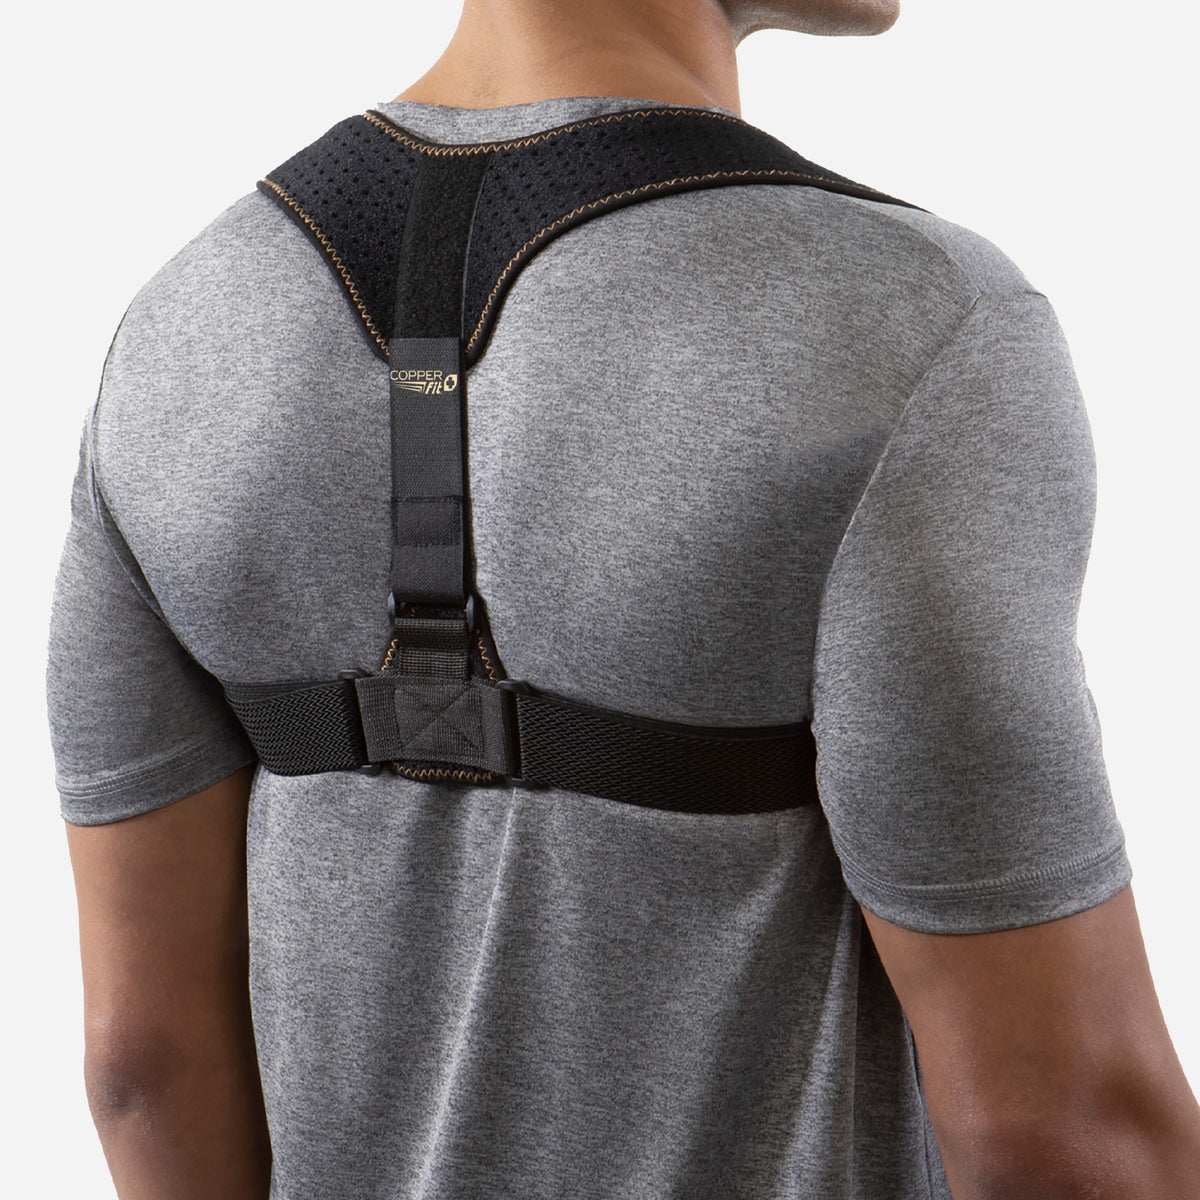 COPPER HEAL – Shoulder Brace Adjustable  